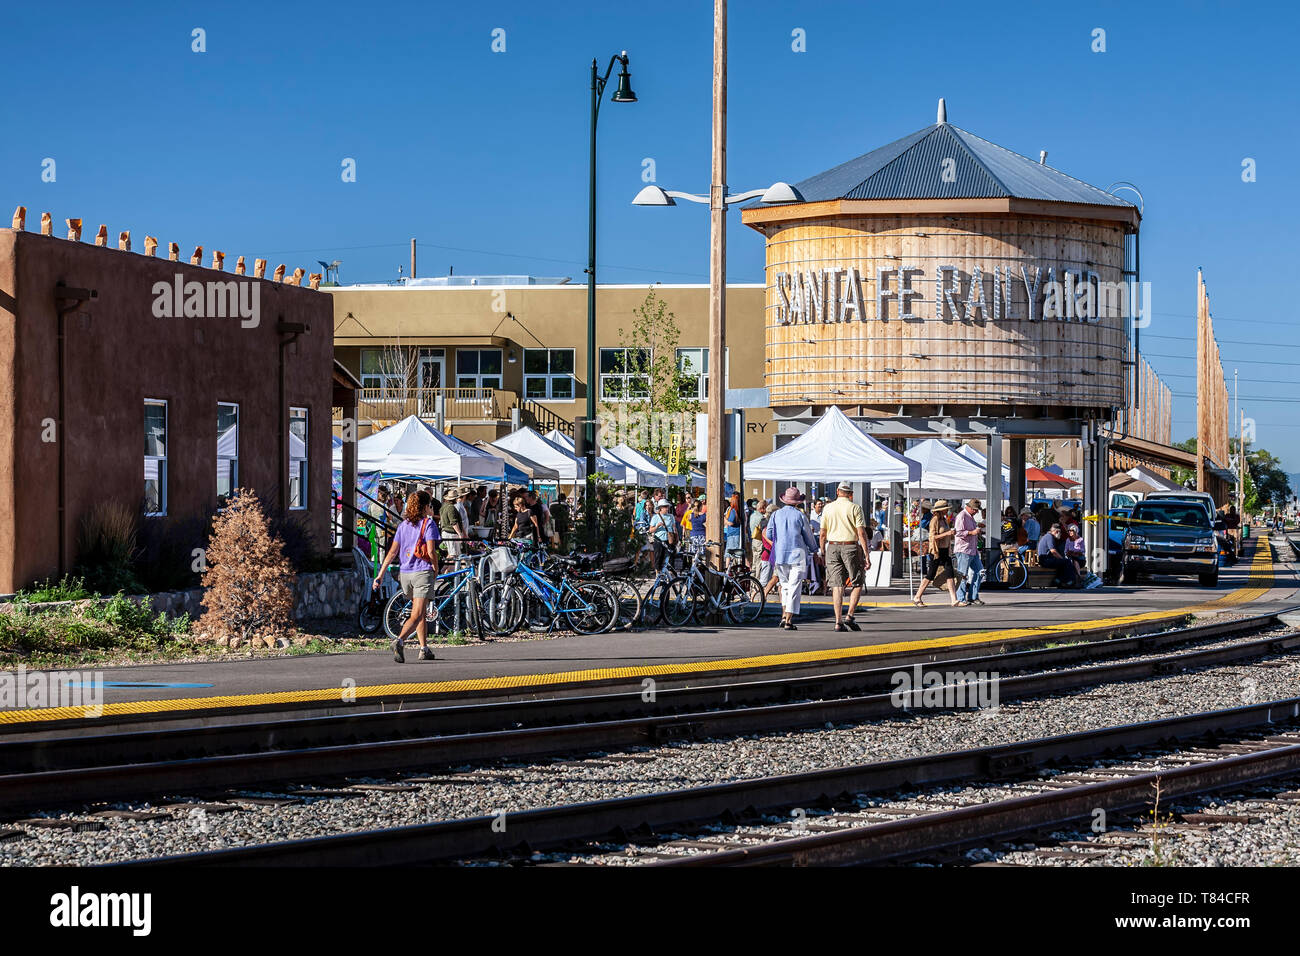 Réplique du château d'eau, les consommateurs au marché de fermiers et des voies de chemin de fer, Gare de Santa Fe, Nouveau Mexique USA Banque D'Images